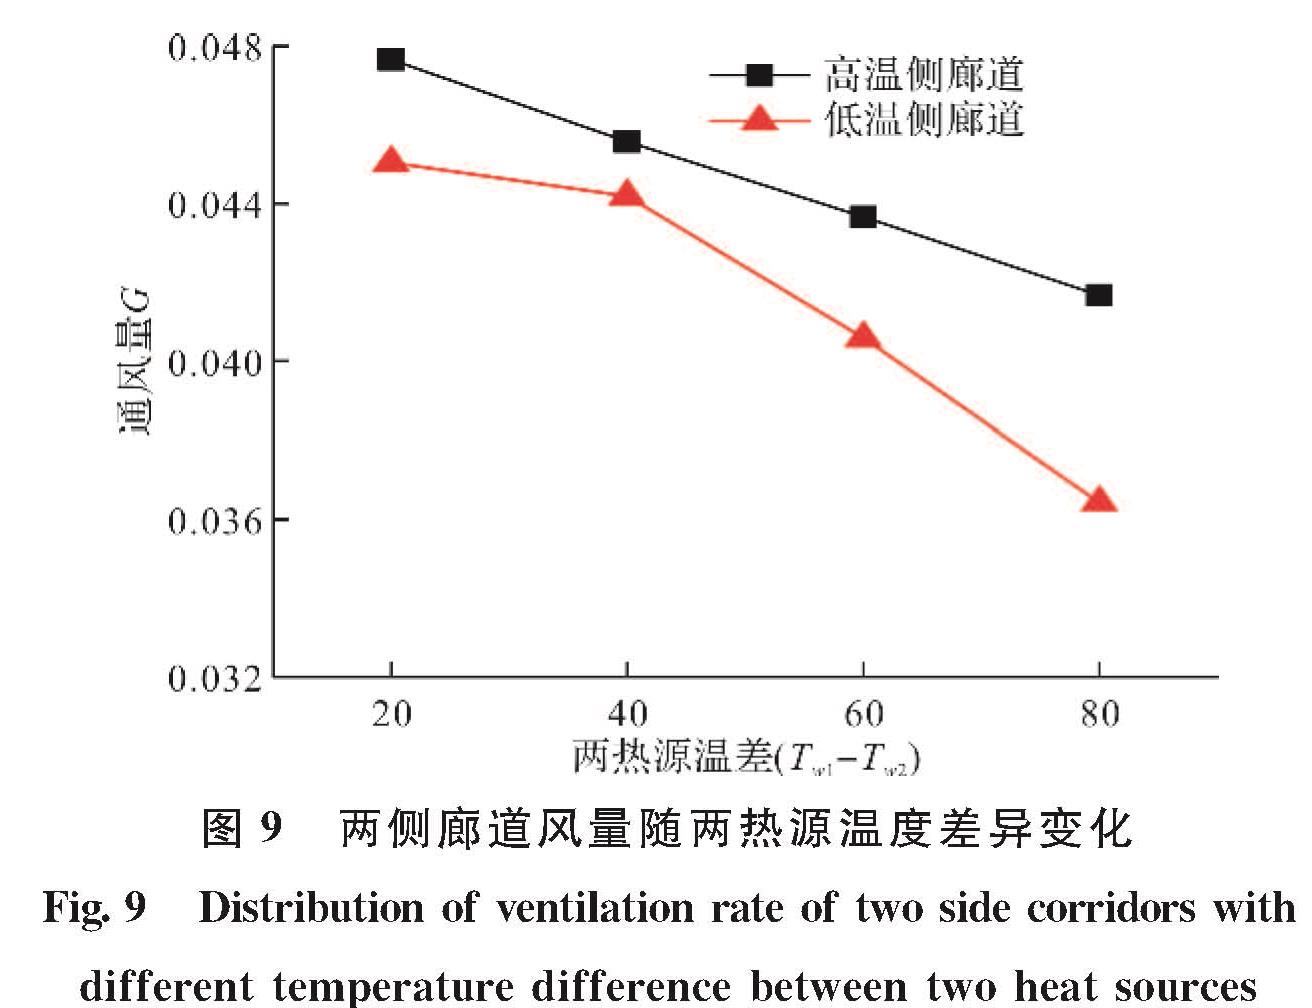 图9 两侧廊道风量随两热源温度差异变化<br/>Fig.9 Distribution of ventilation rate of two side corridors with different temperature difference between two heat sources